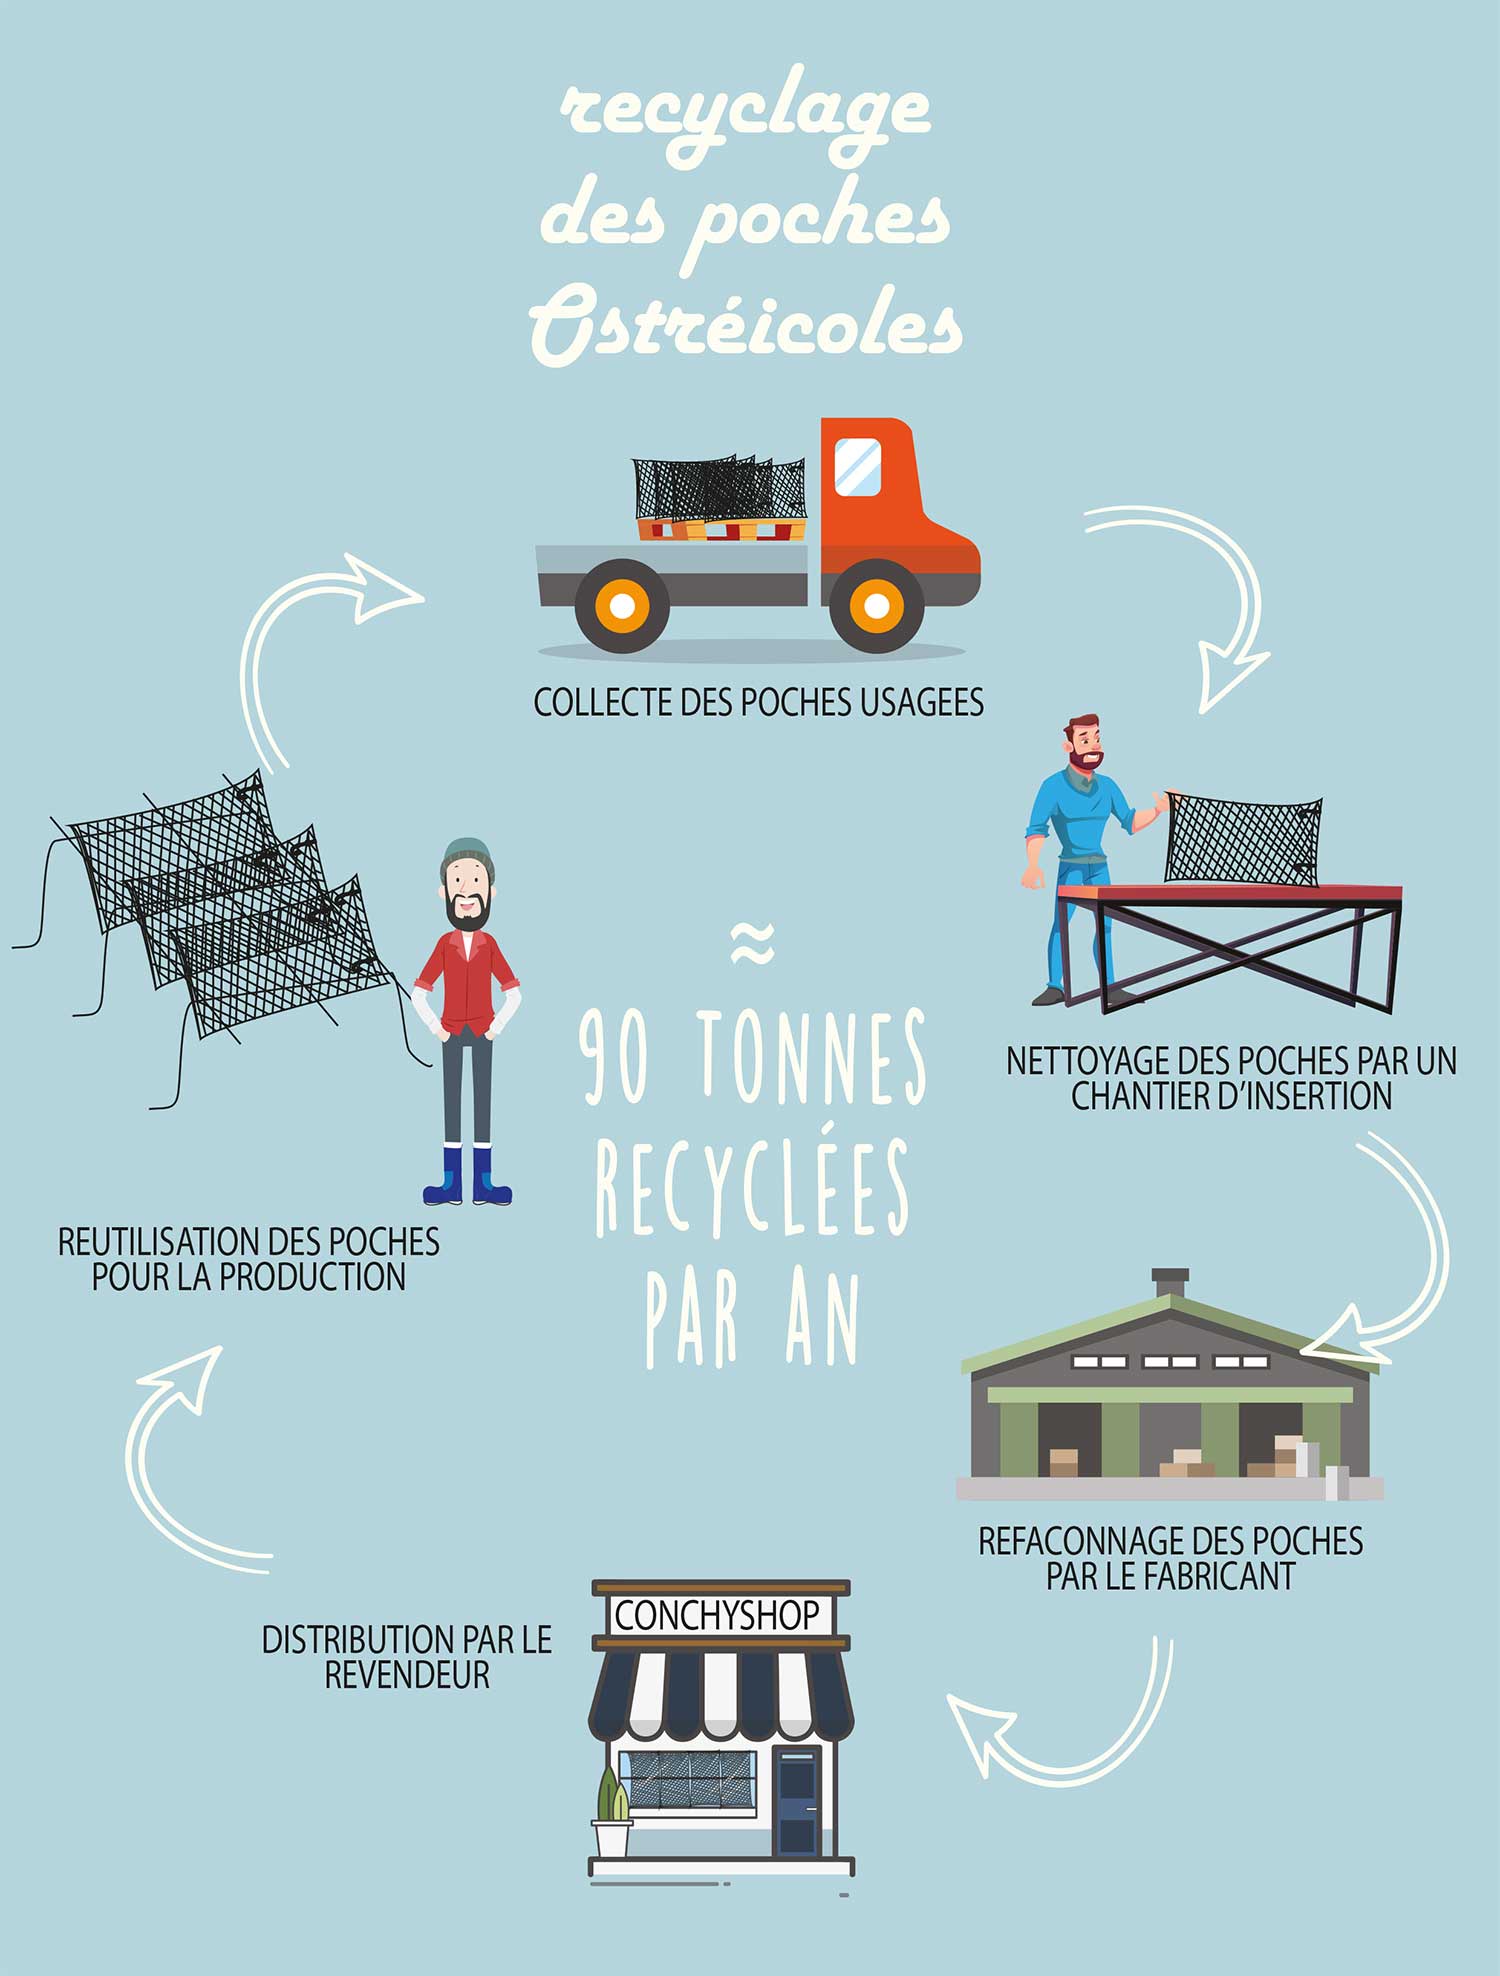 Recyclage des poches ostréicoles | Comité Régional de la conchyliculture Charente-Maritime